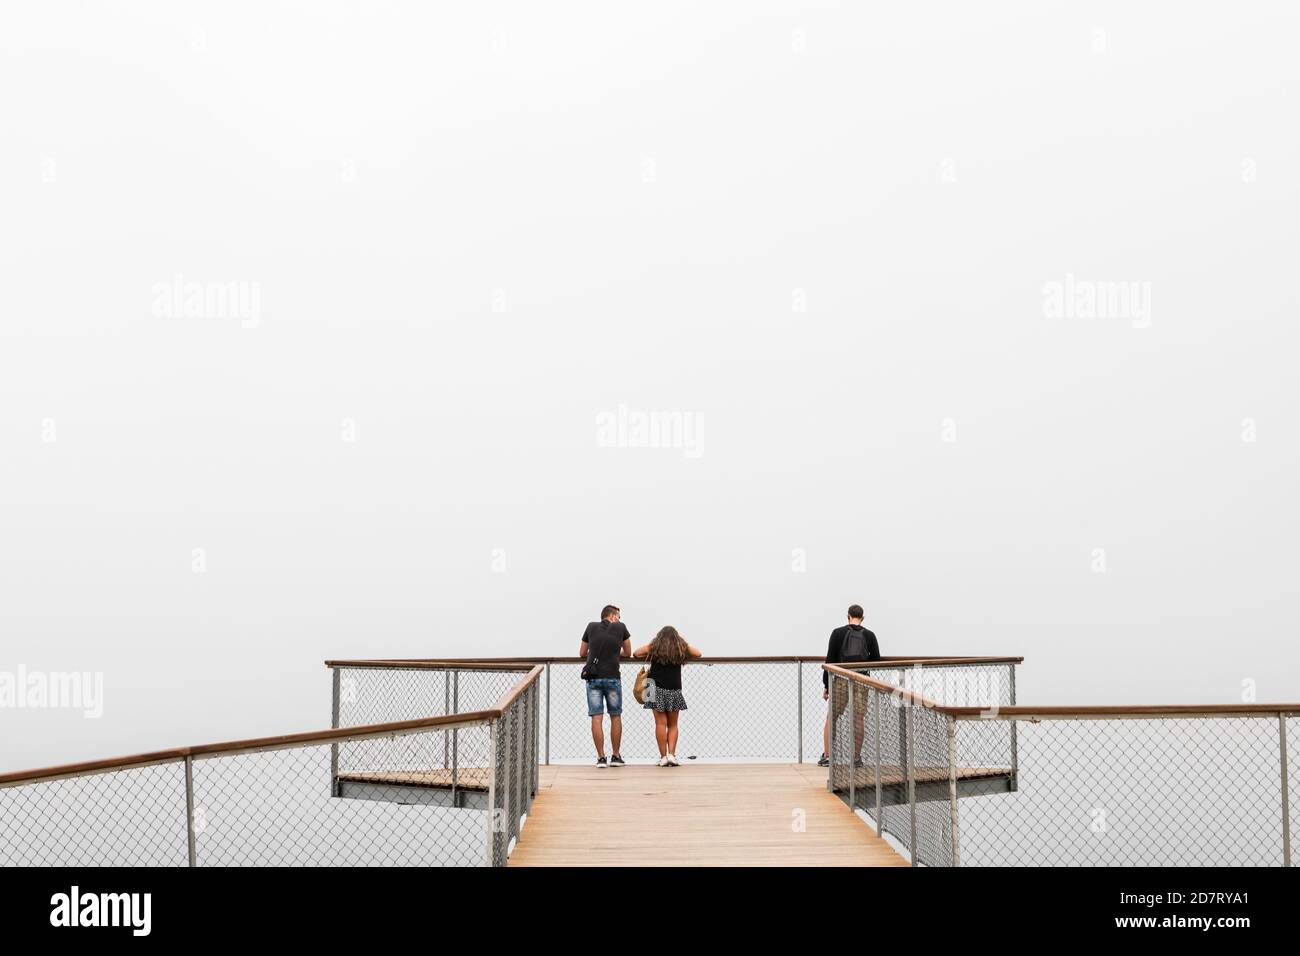 PONTEVEDRA, ESPAGNE - 25 AOÛT 2020 : un petit groupe de personnes attend que le brouillard s'élève sur un point de vue moderne sur l'estuaire de la Ria de Arousa en Galice. Banque D'Images